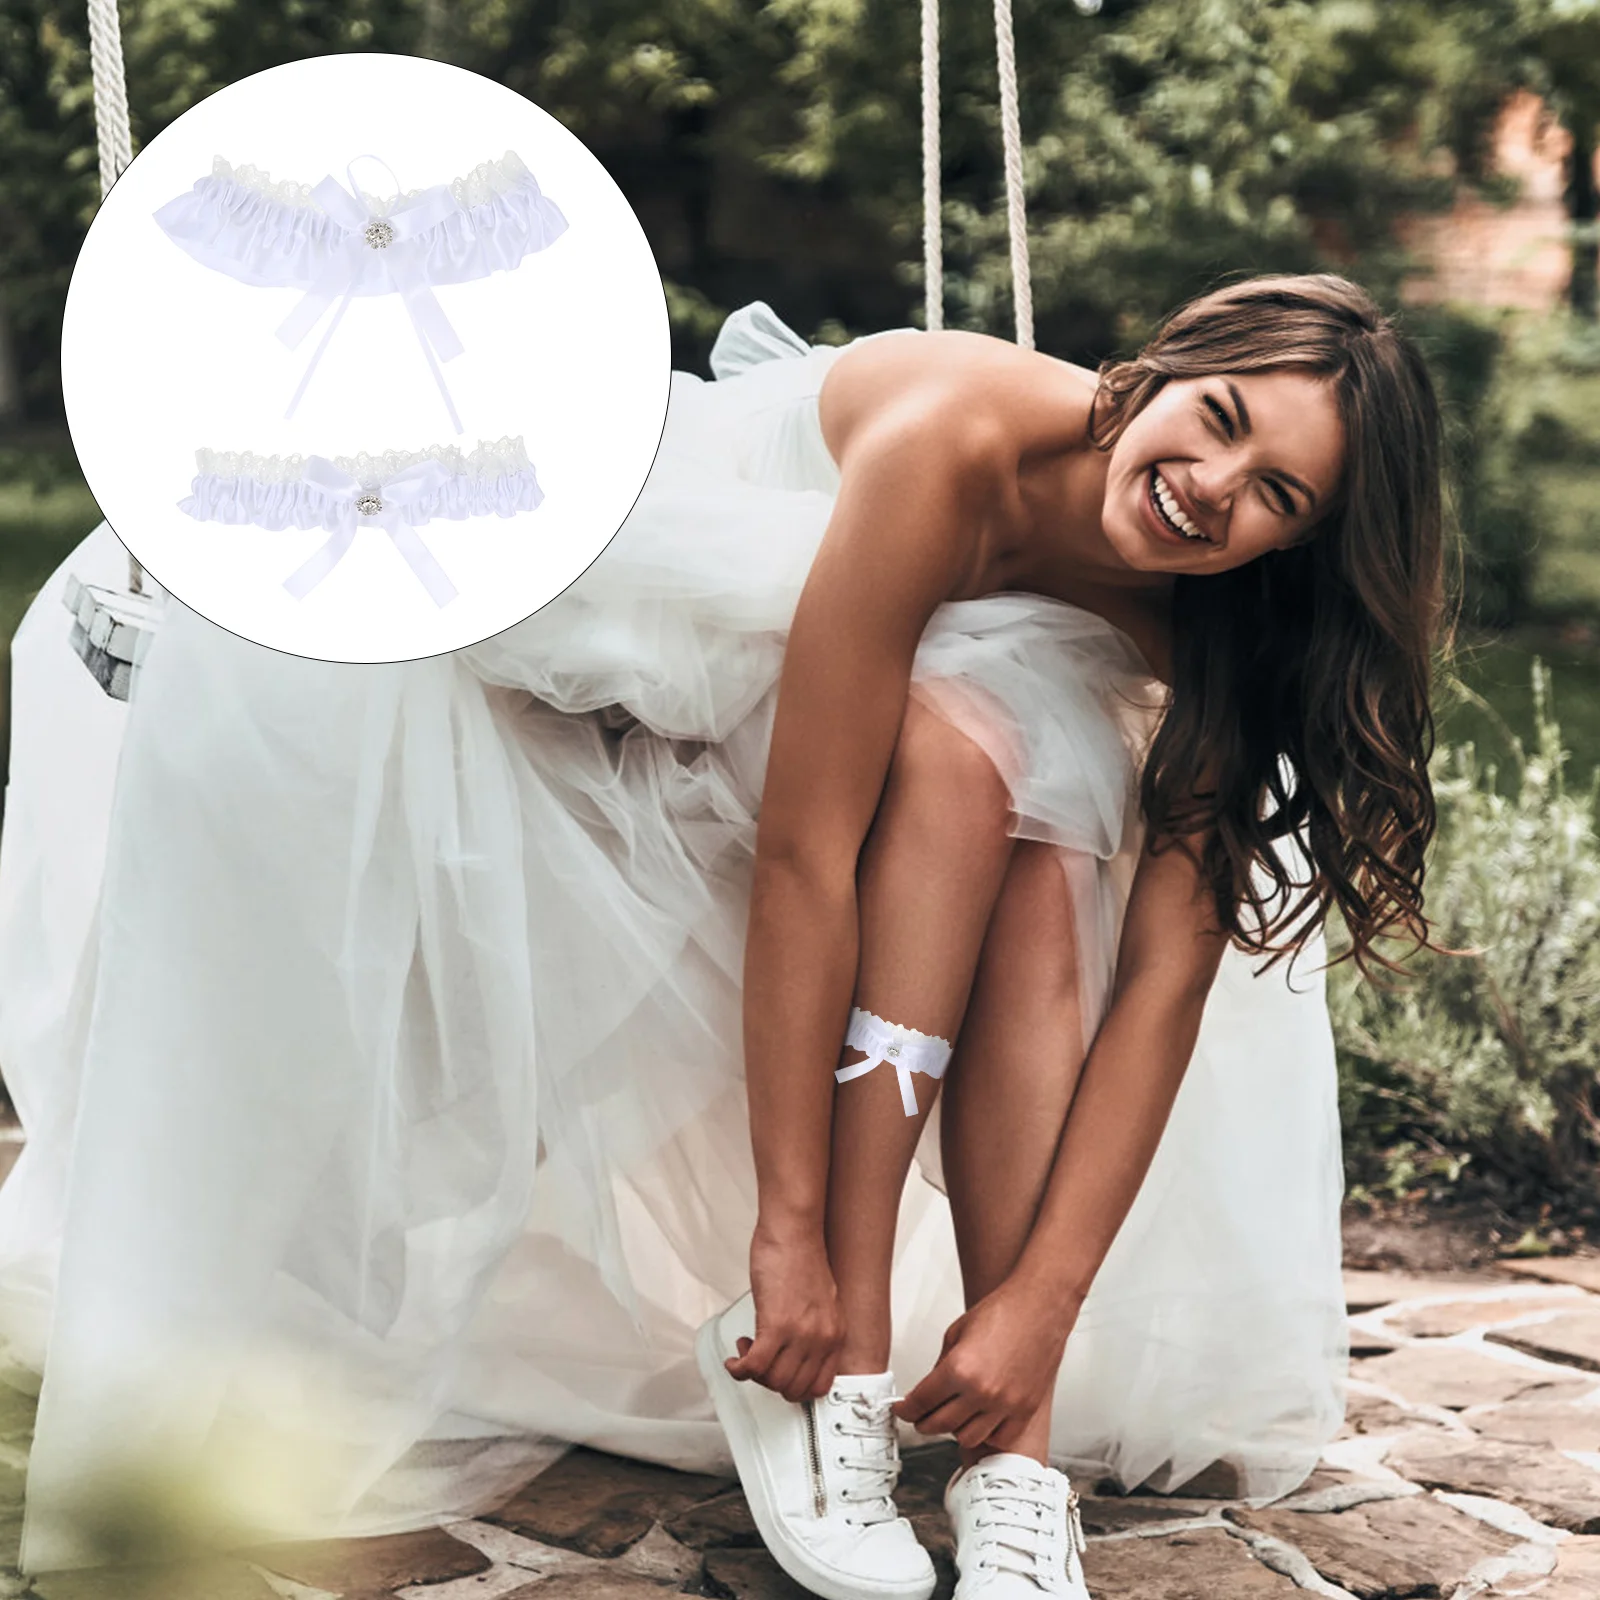 

Подвязка декоративное кольцо на бедро креативная петля для ног свадебное нижнее белье украшения для невесты нежные кружевные женские подвязки для подружки невесты